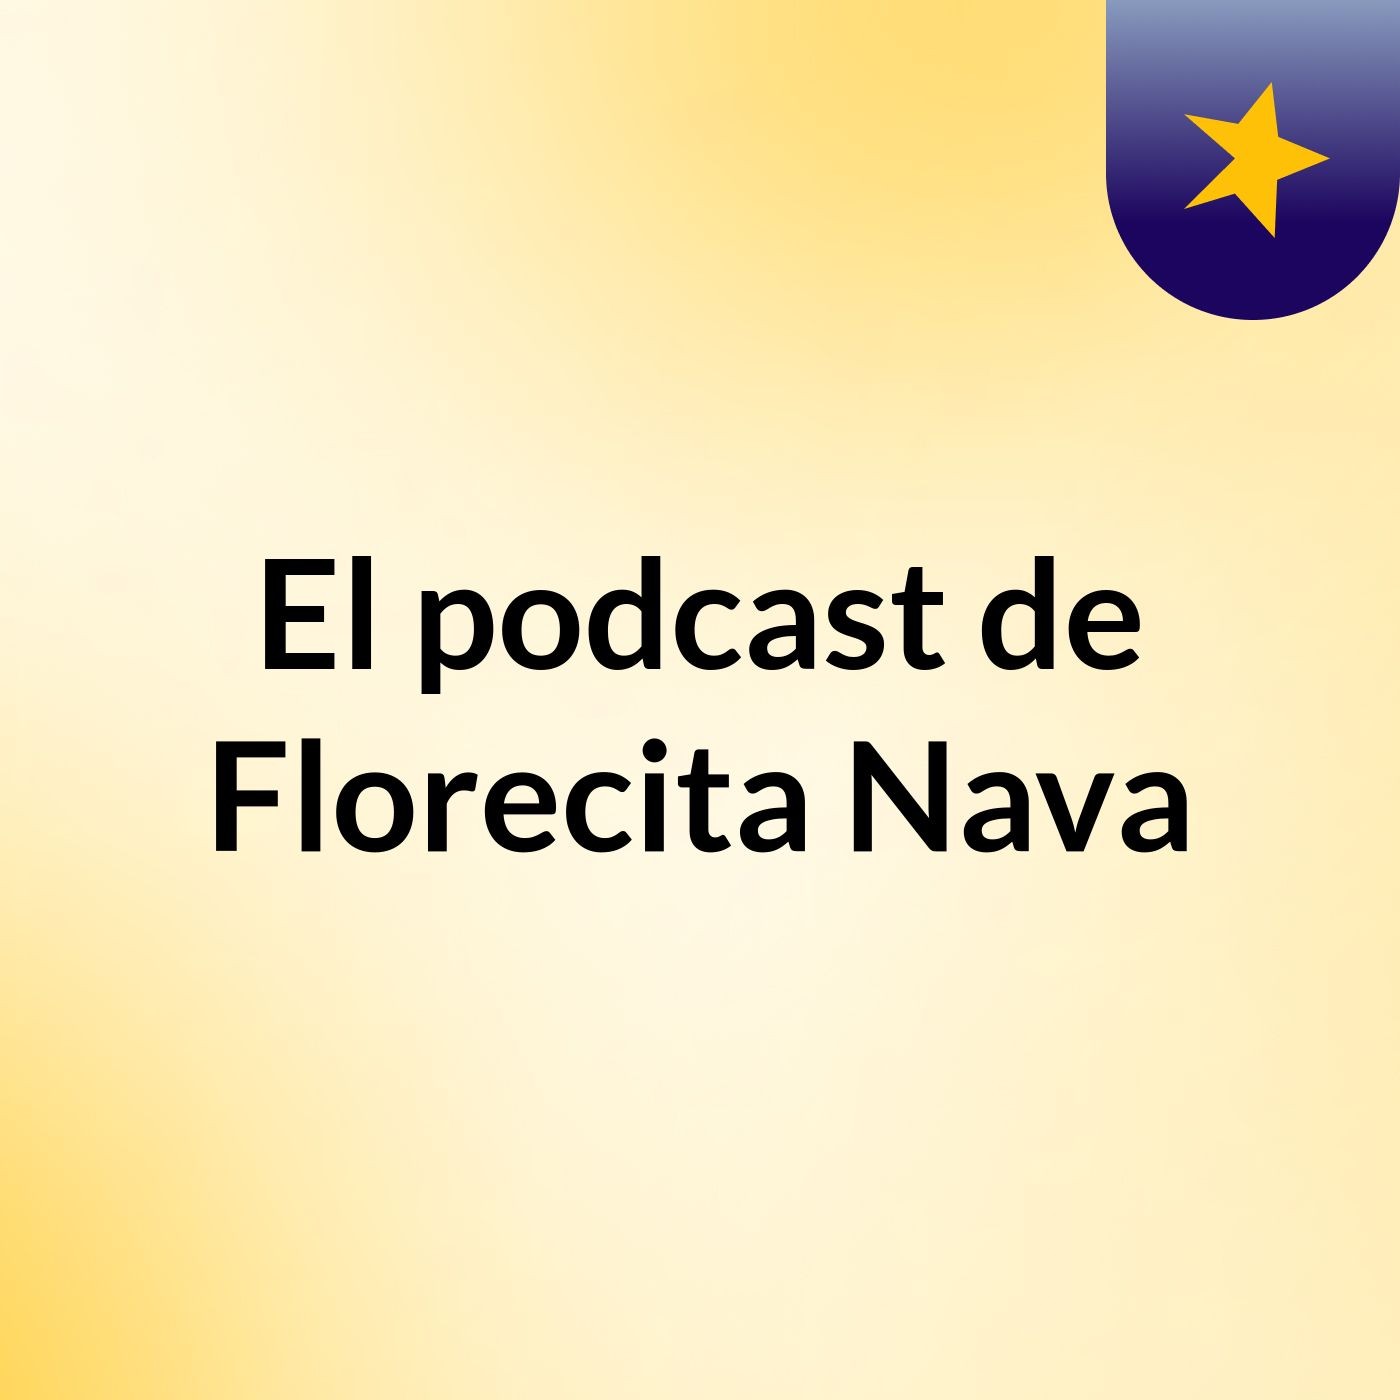 El podcast de Florecita Nava